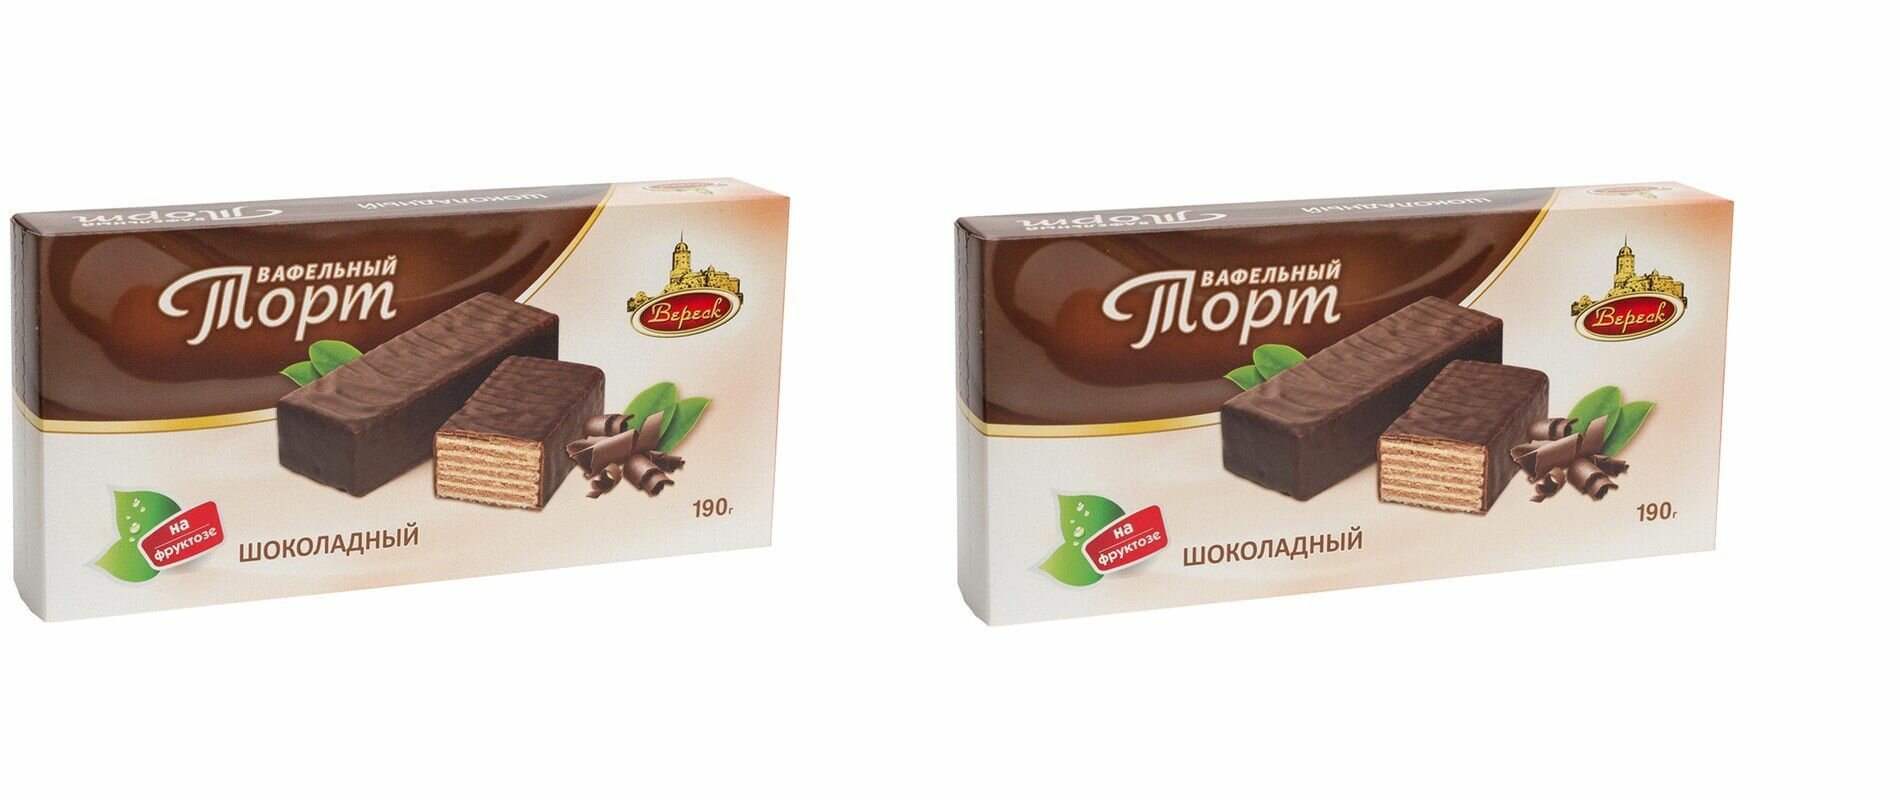 Вереск Торт вафельный Шоколадный, на фруктозе, 190 г, 2 шт - фотография № 1